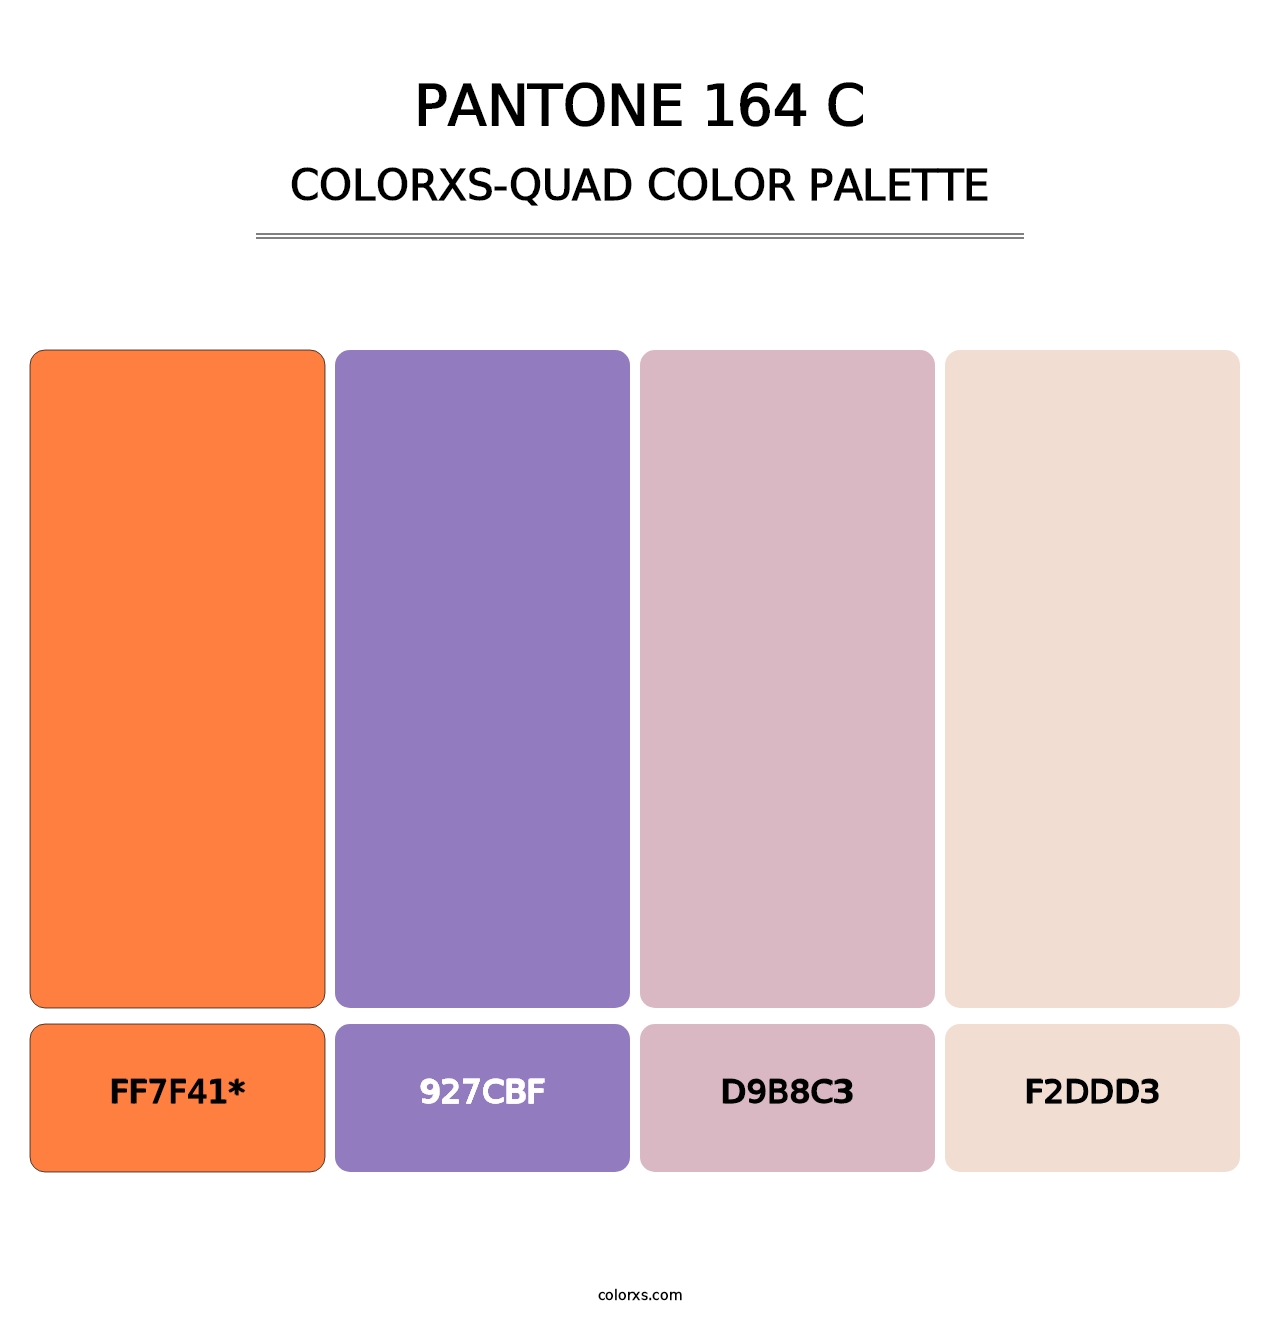 PANTONE 164 C - Colorxs Quad Palette